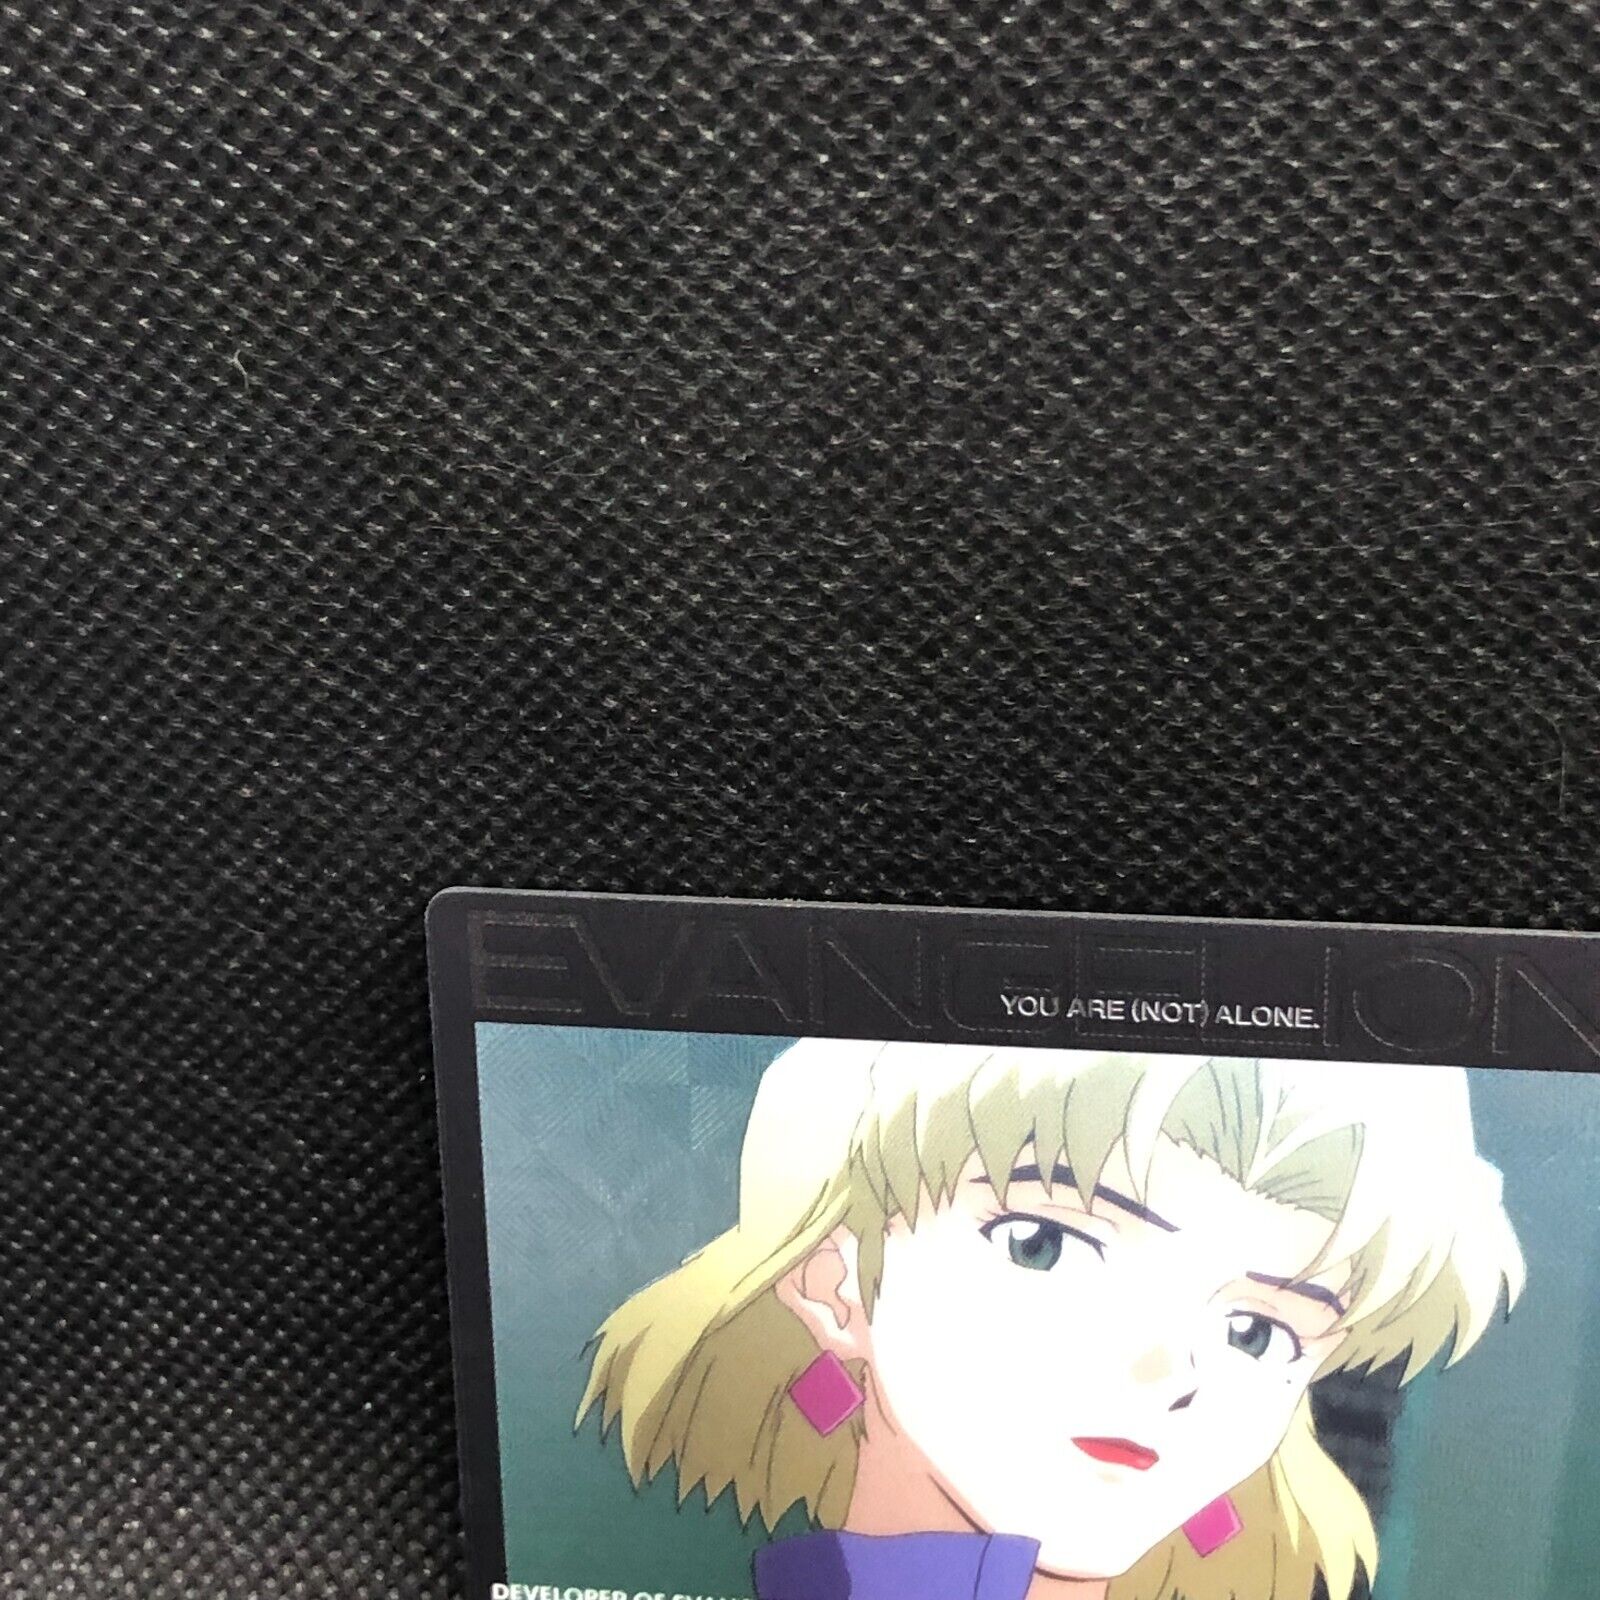 Ritsuko Akagi Evangelion 1.0 C-04 plastic Card 2010 Bandai Japan F/S16